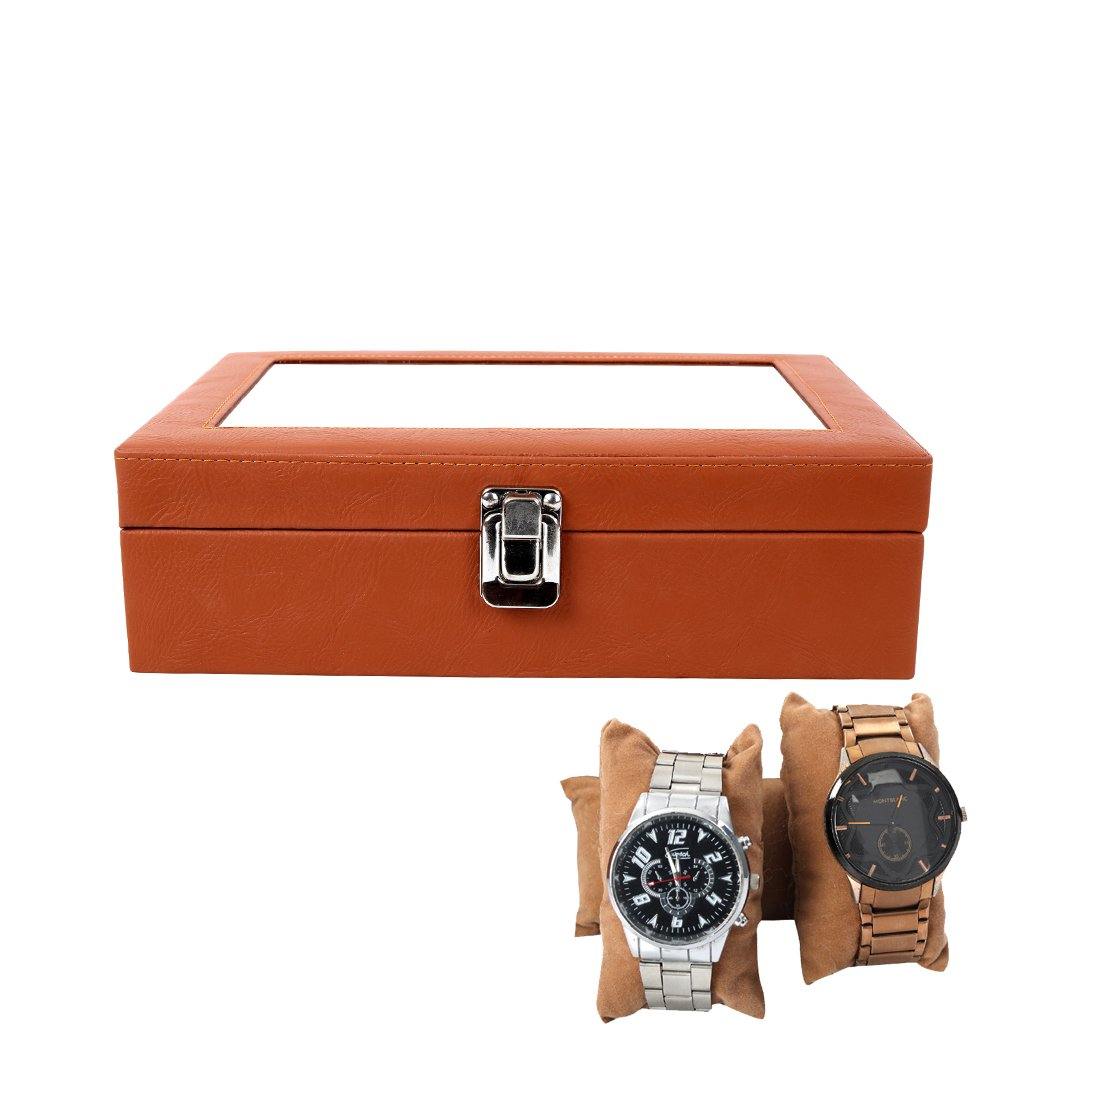 Leather World PU Leather Watch Box | 8 slots - Leatherworldonline.net